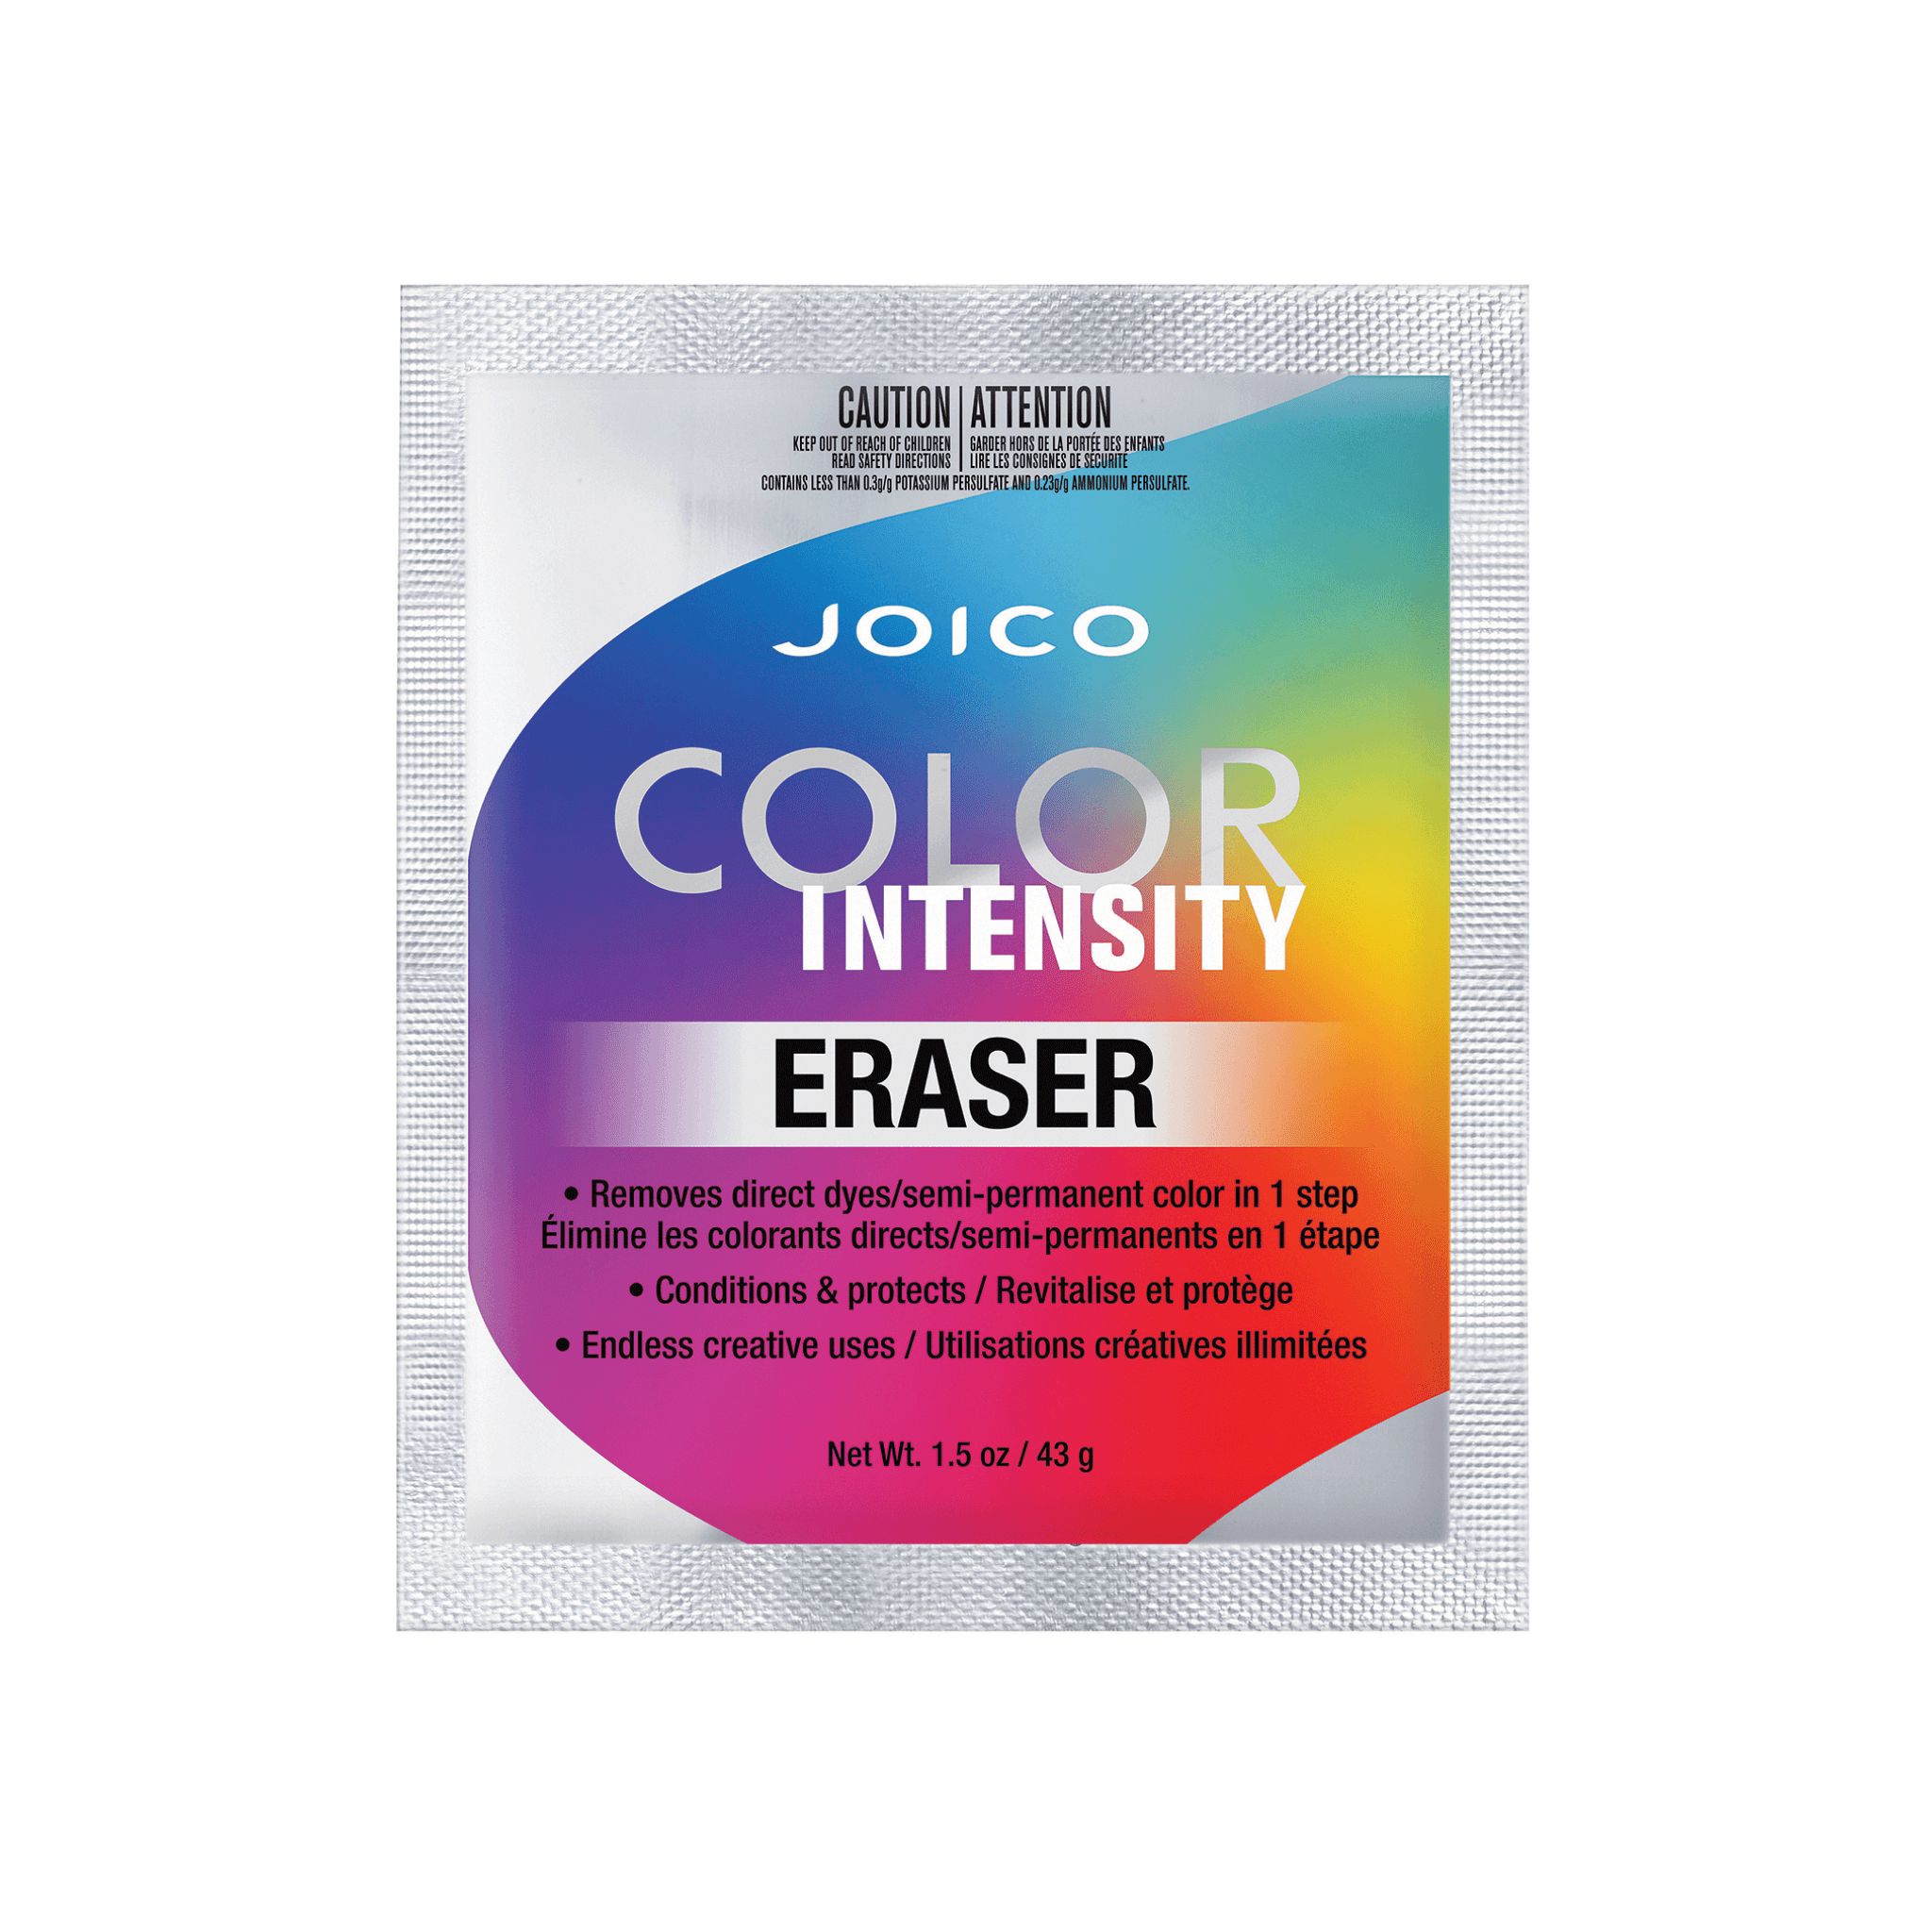 joico color intensity eraser